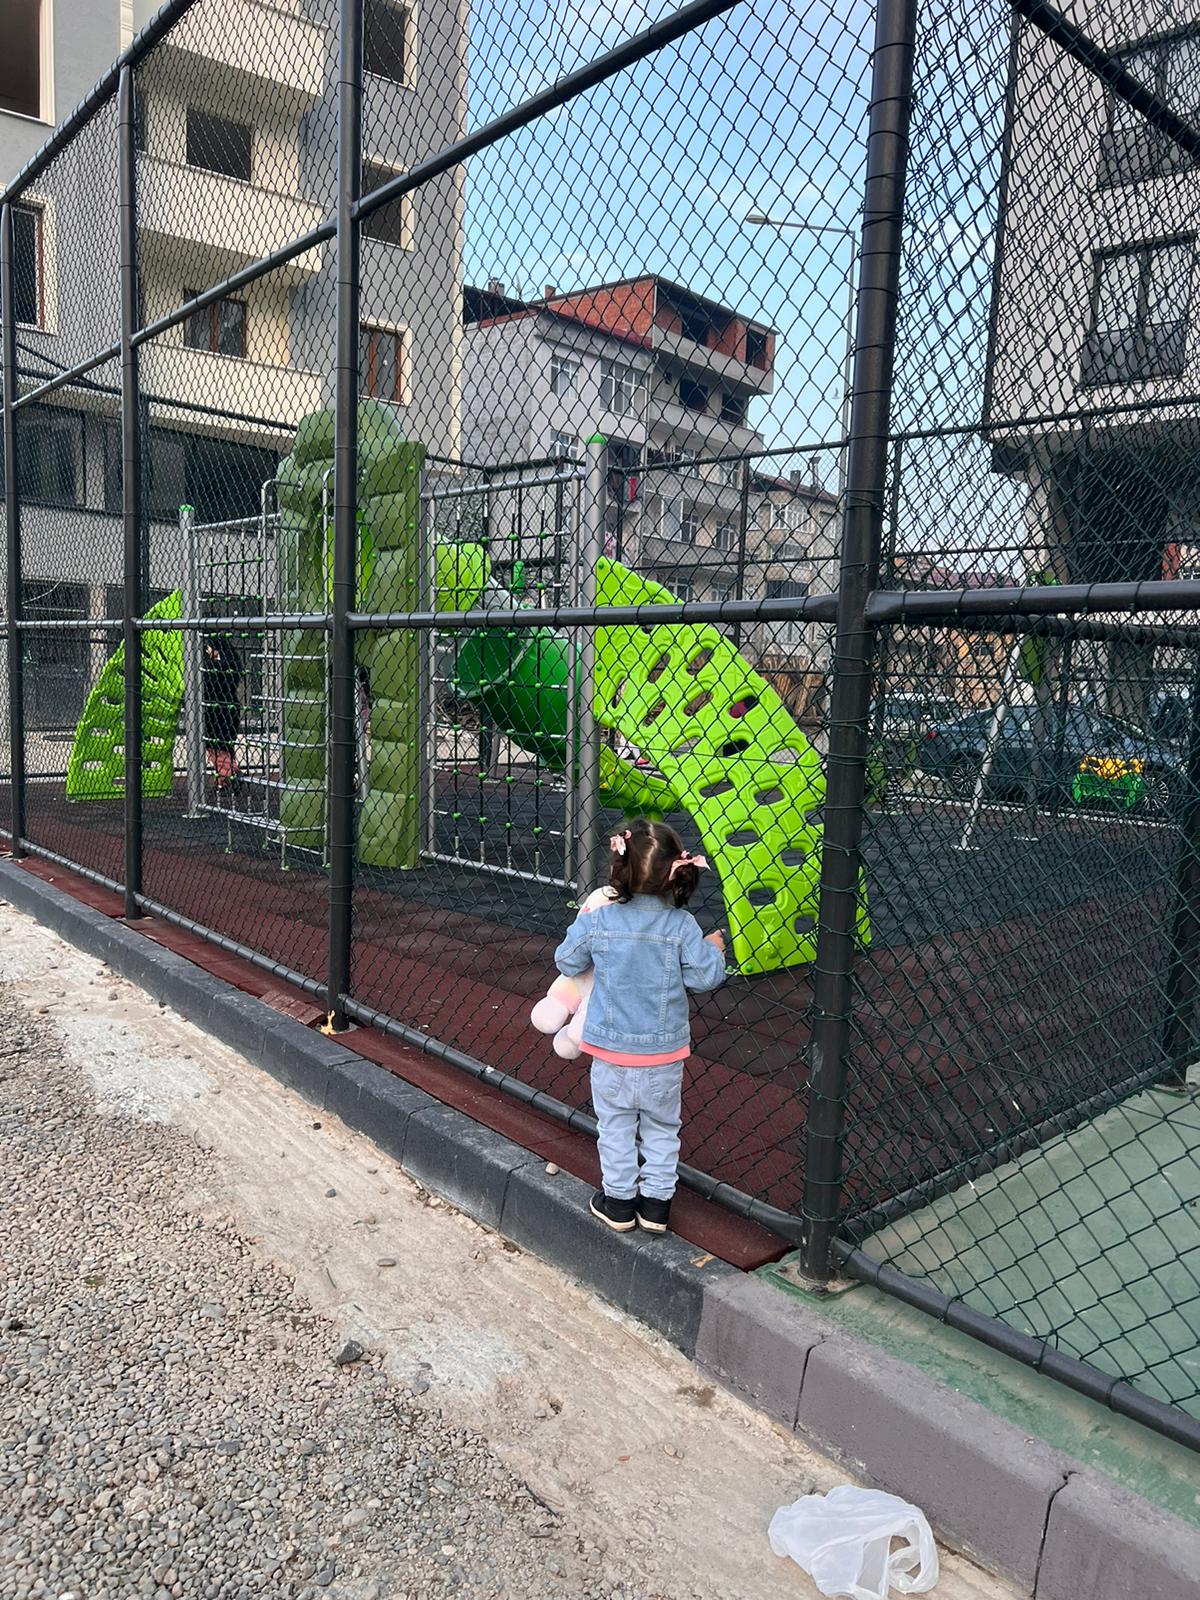 Araklı'da Çocuklara Yasaklı Park! Çocuklar Kapıda Ağlasın diye mi?